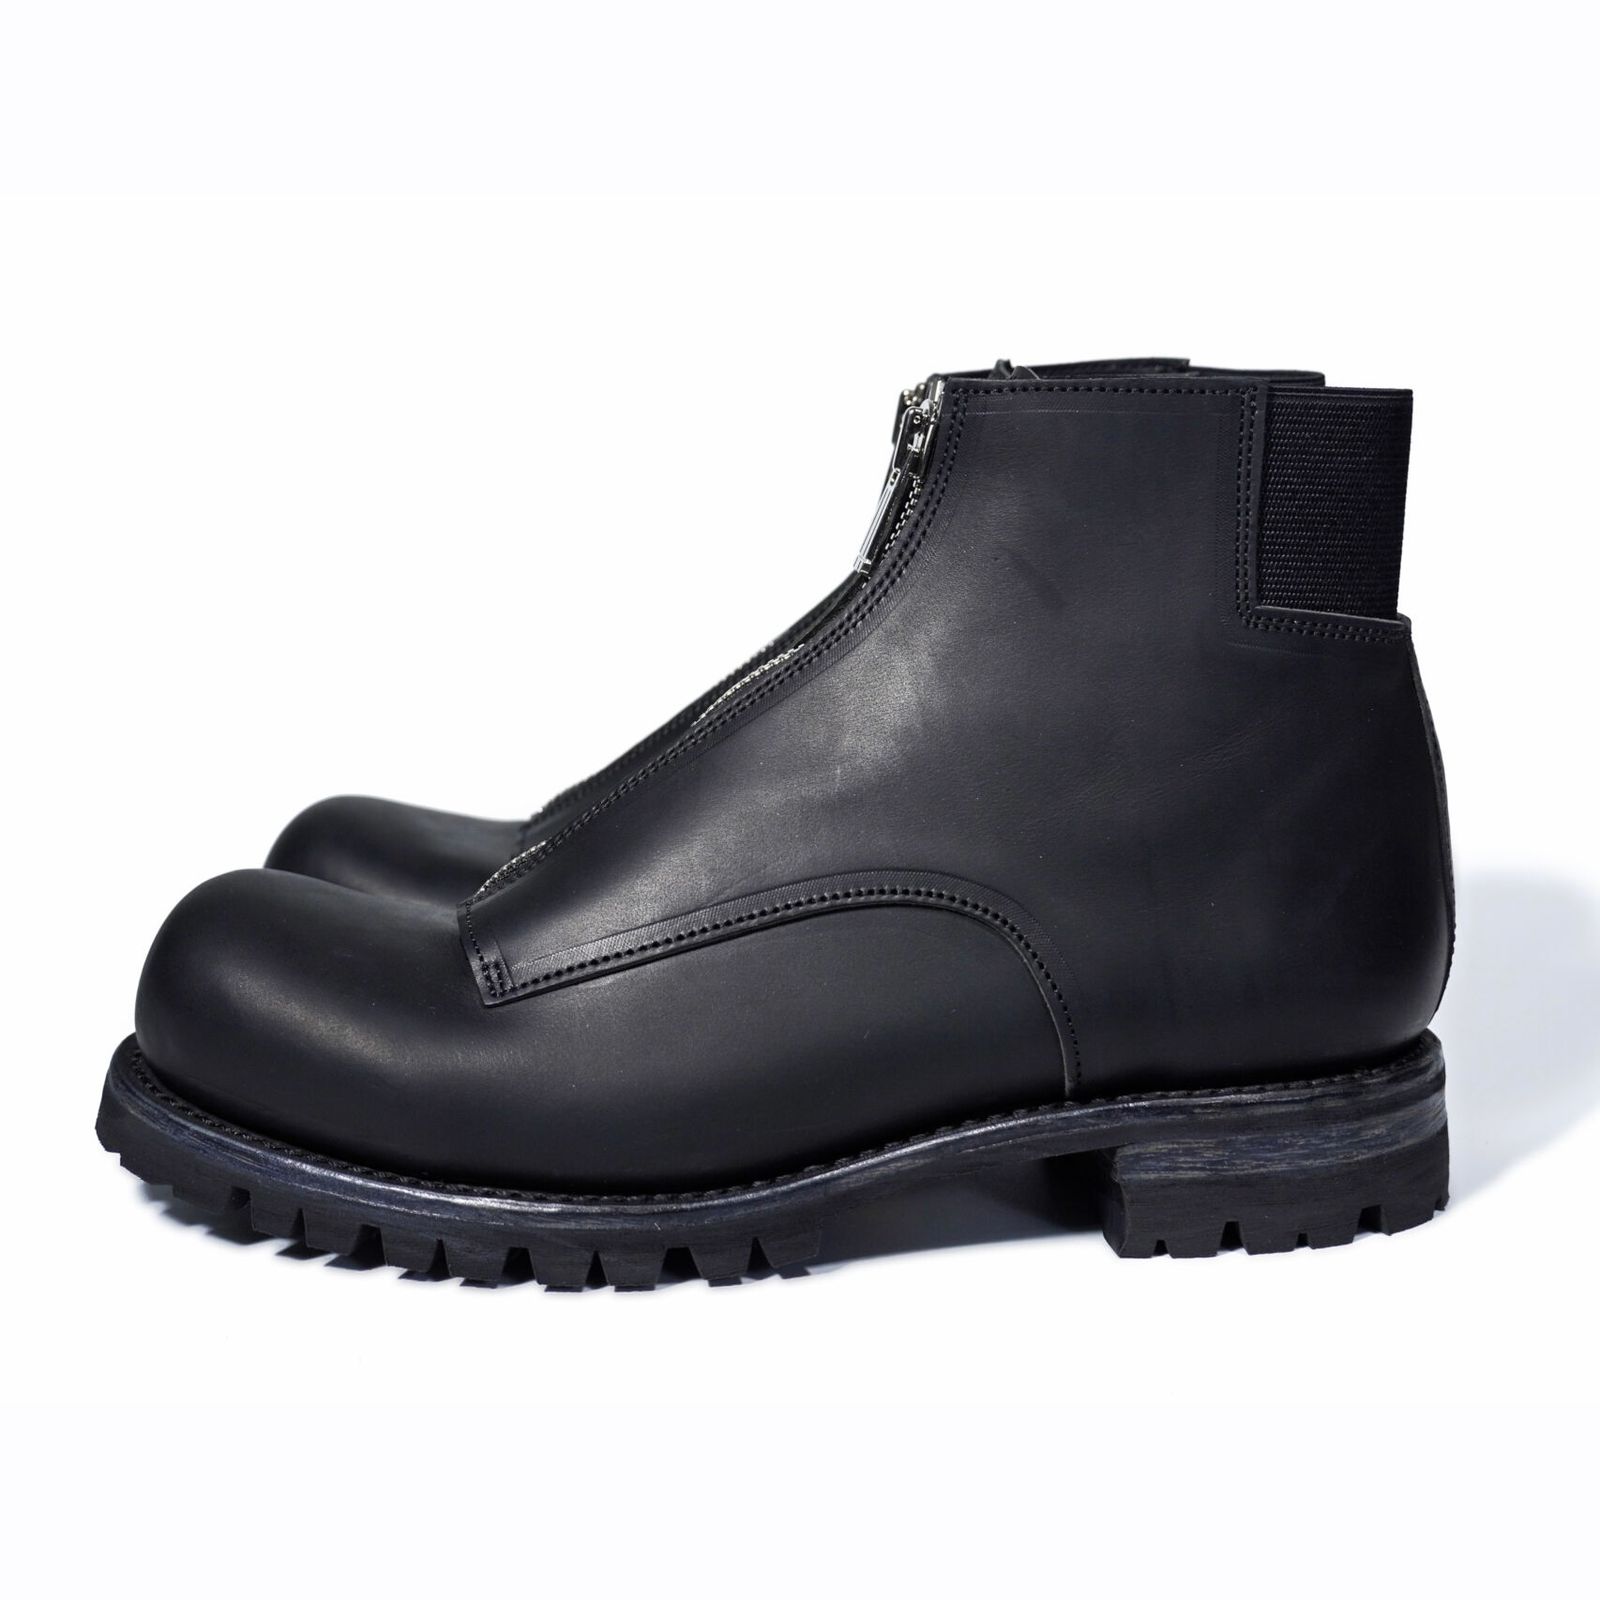 【お取り寄せ注文可能】Center Zip Boots(MEN) - EU40